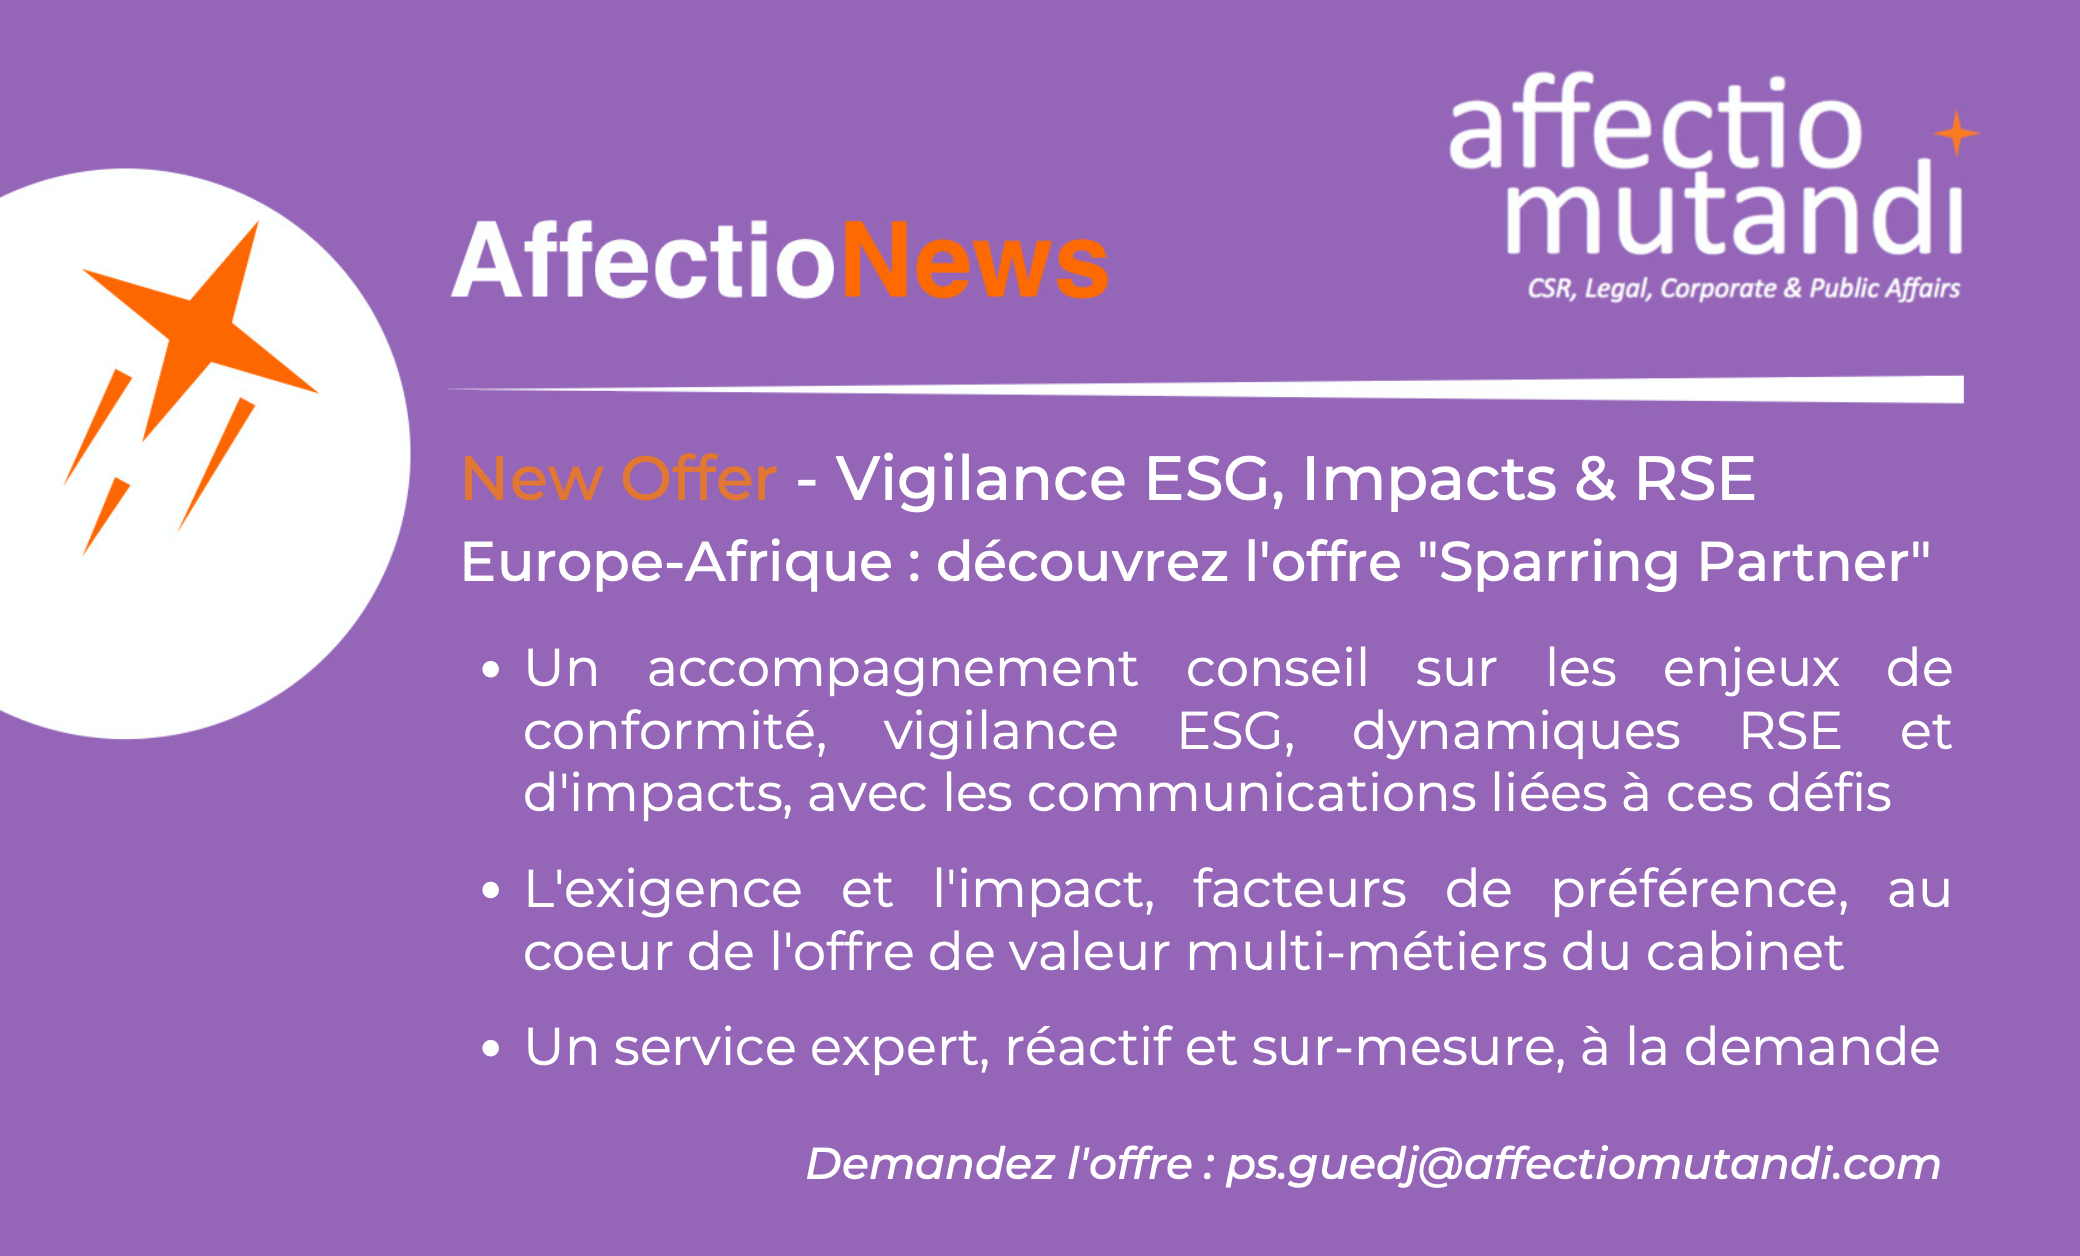 Affectio News – Découvrez l’offre “Sparring Partner” d’Affectio Mutandi : Vigilance ESG, Impacts & RSE !!!